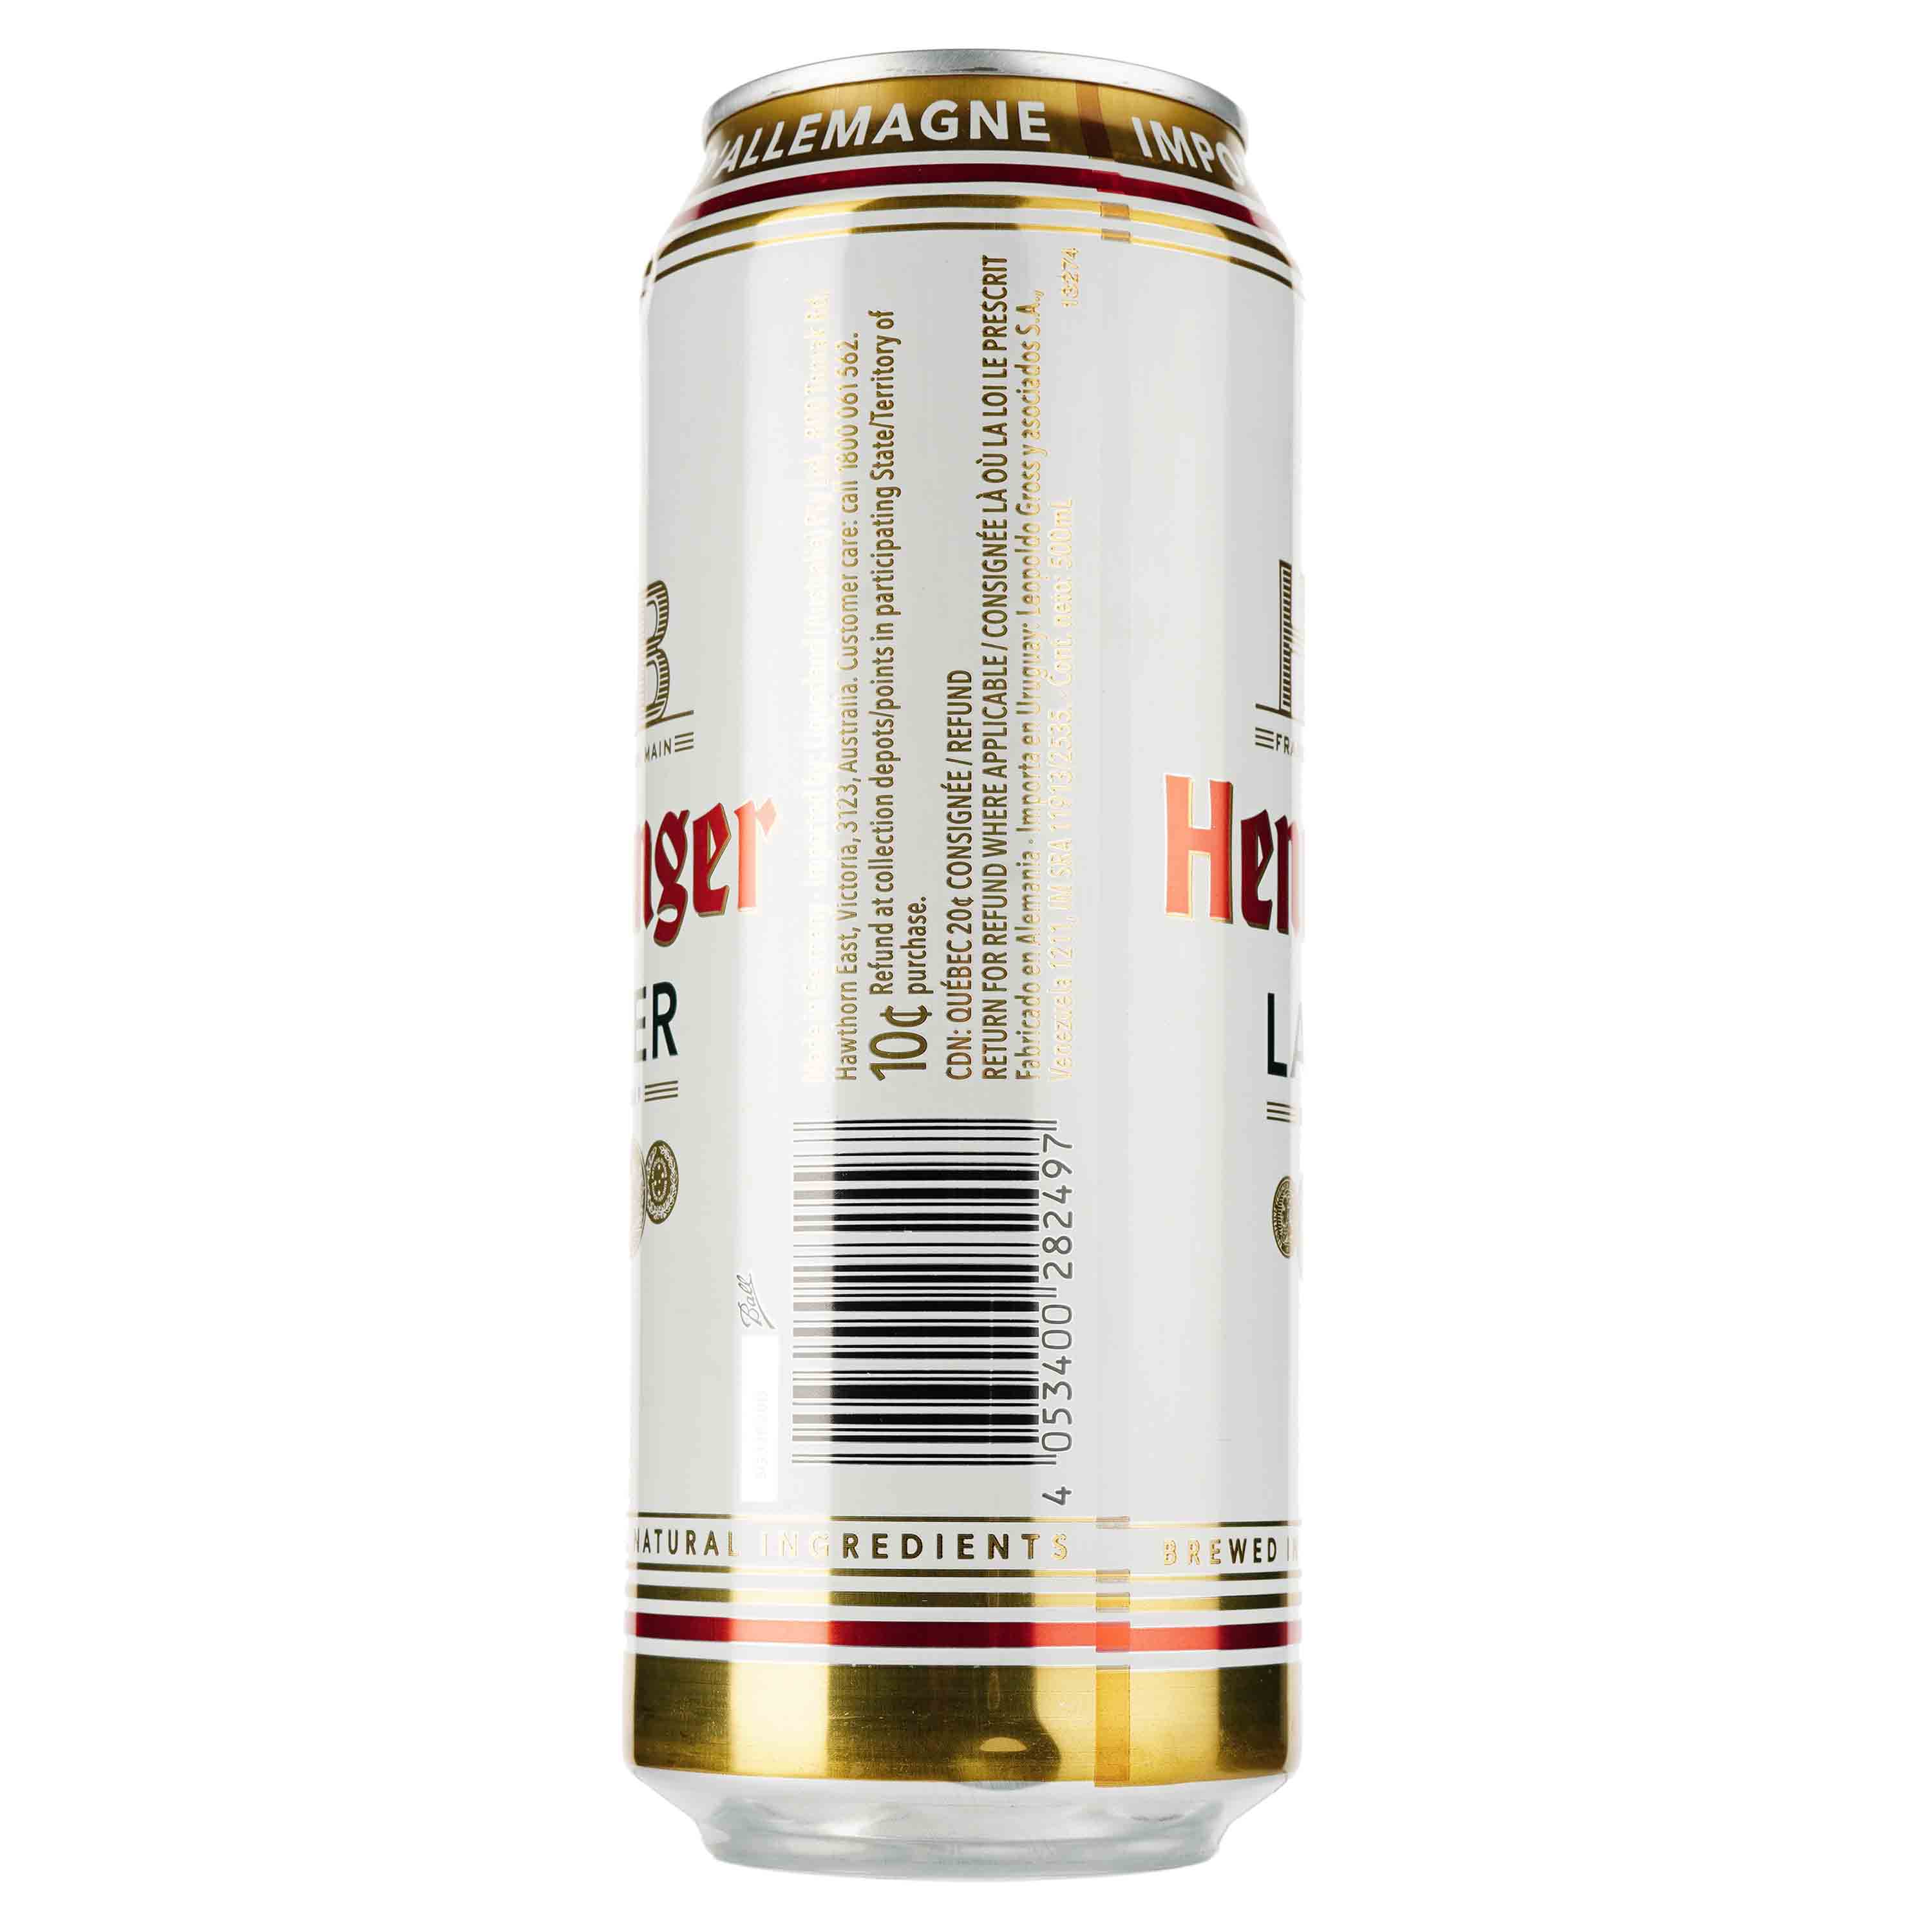 Пиво Henninger Lager, світле, фільтроване, 4,8%, з/б, 0,5 л - фото 2